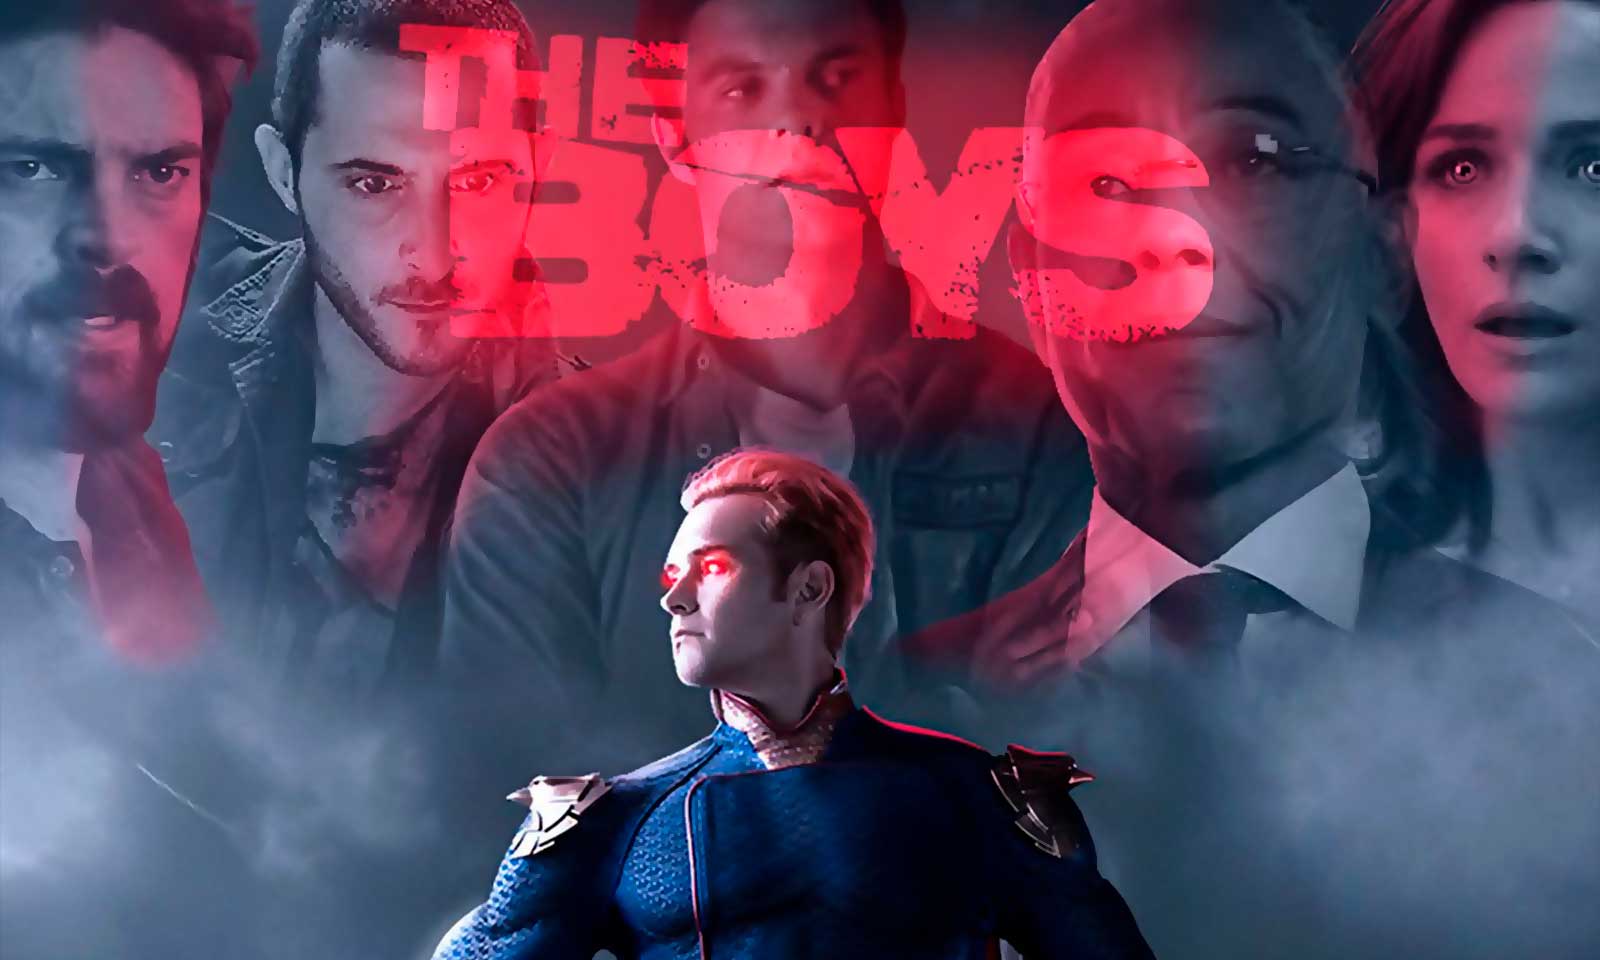 The Boys: 2ª Temporada  Crítica (Sem Spoilers) - Multiversos